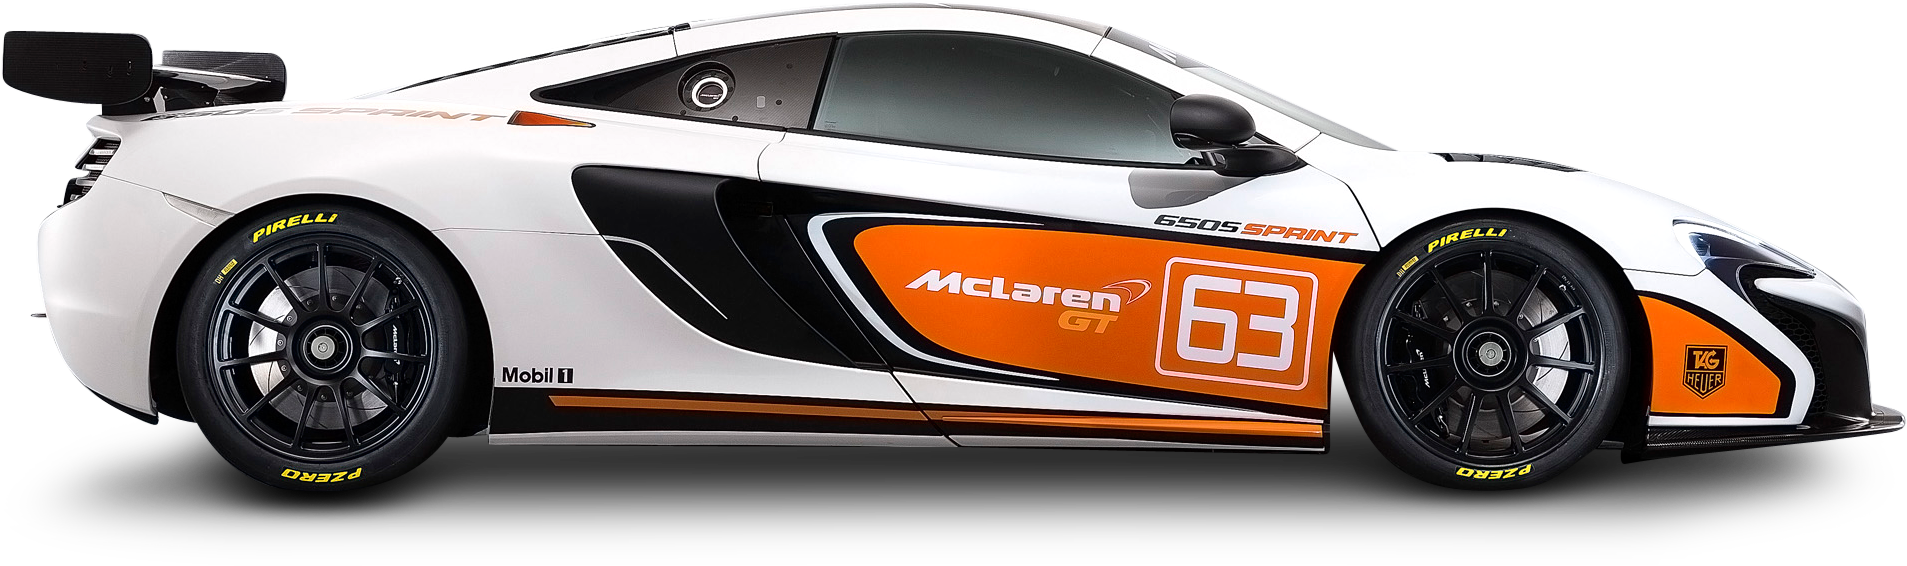 Mc Laren650 S Sprint Racing Car Side View PNG